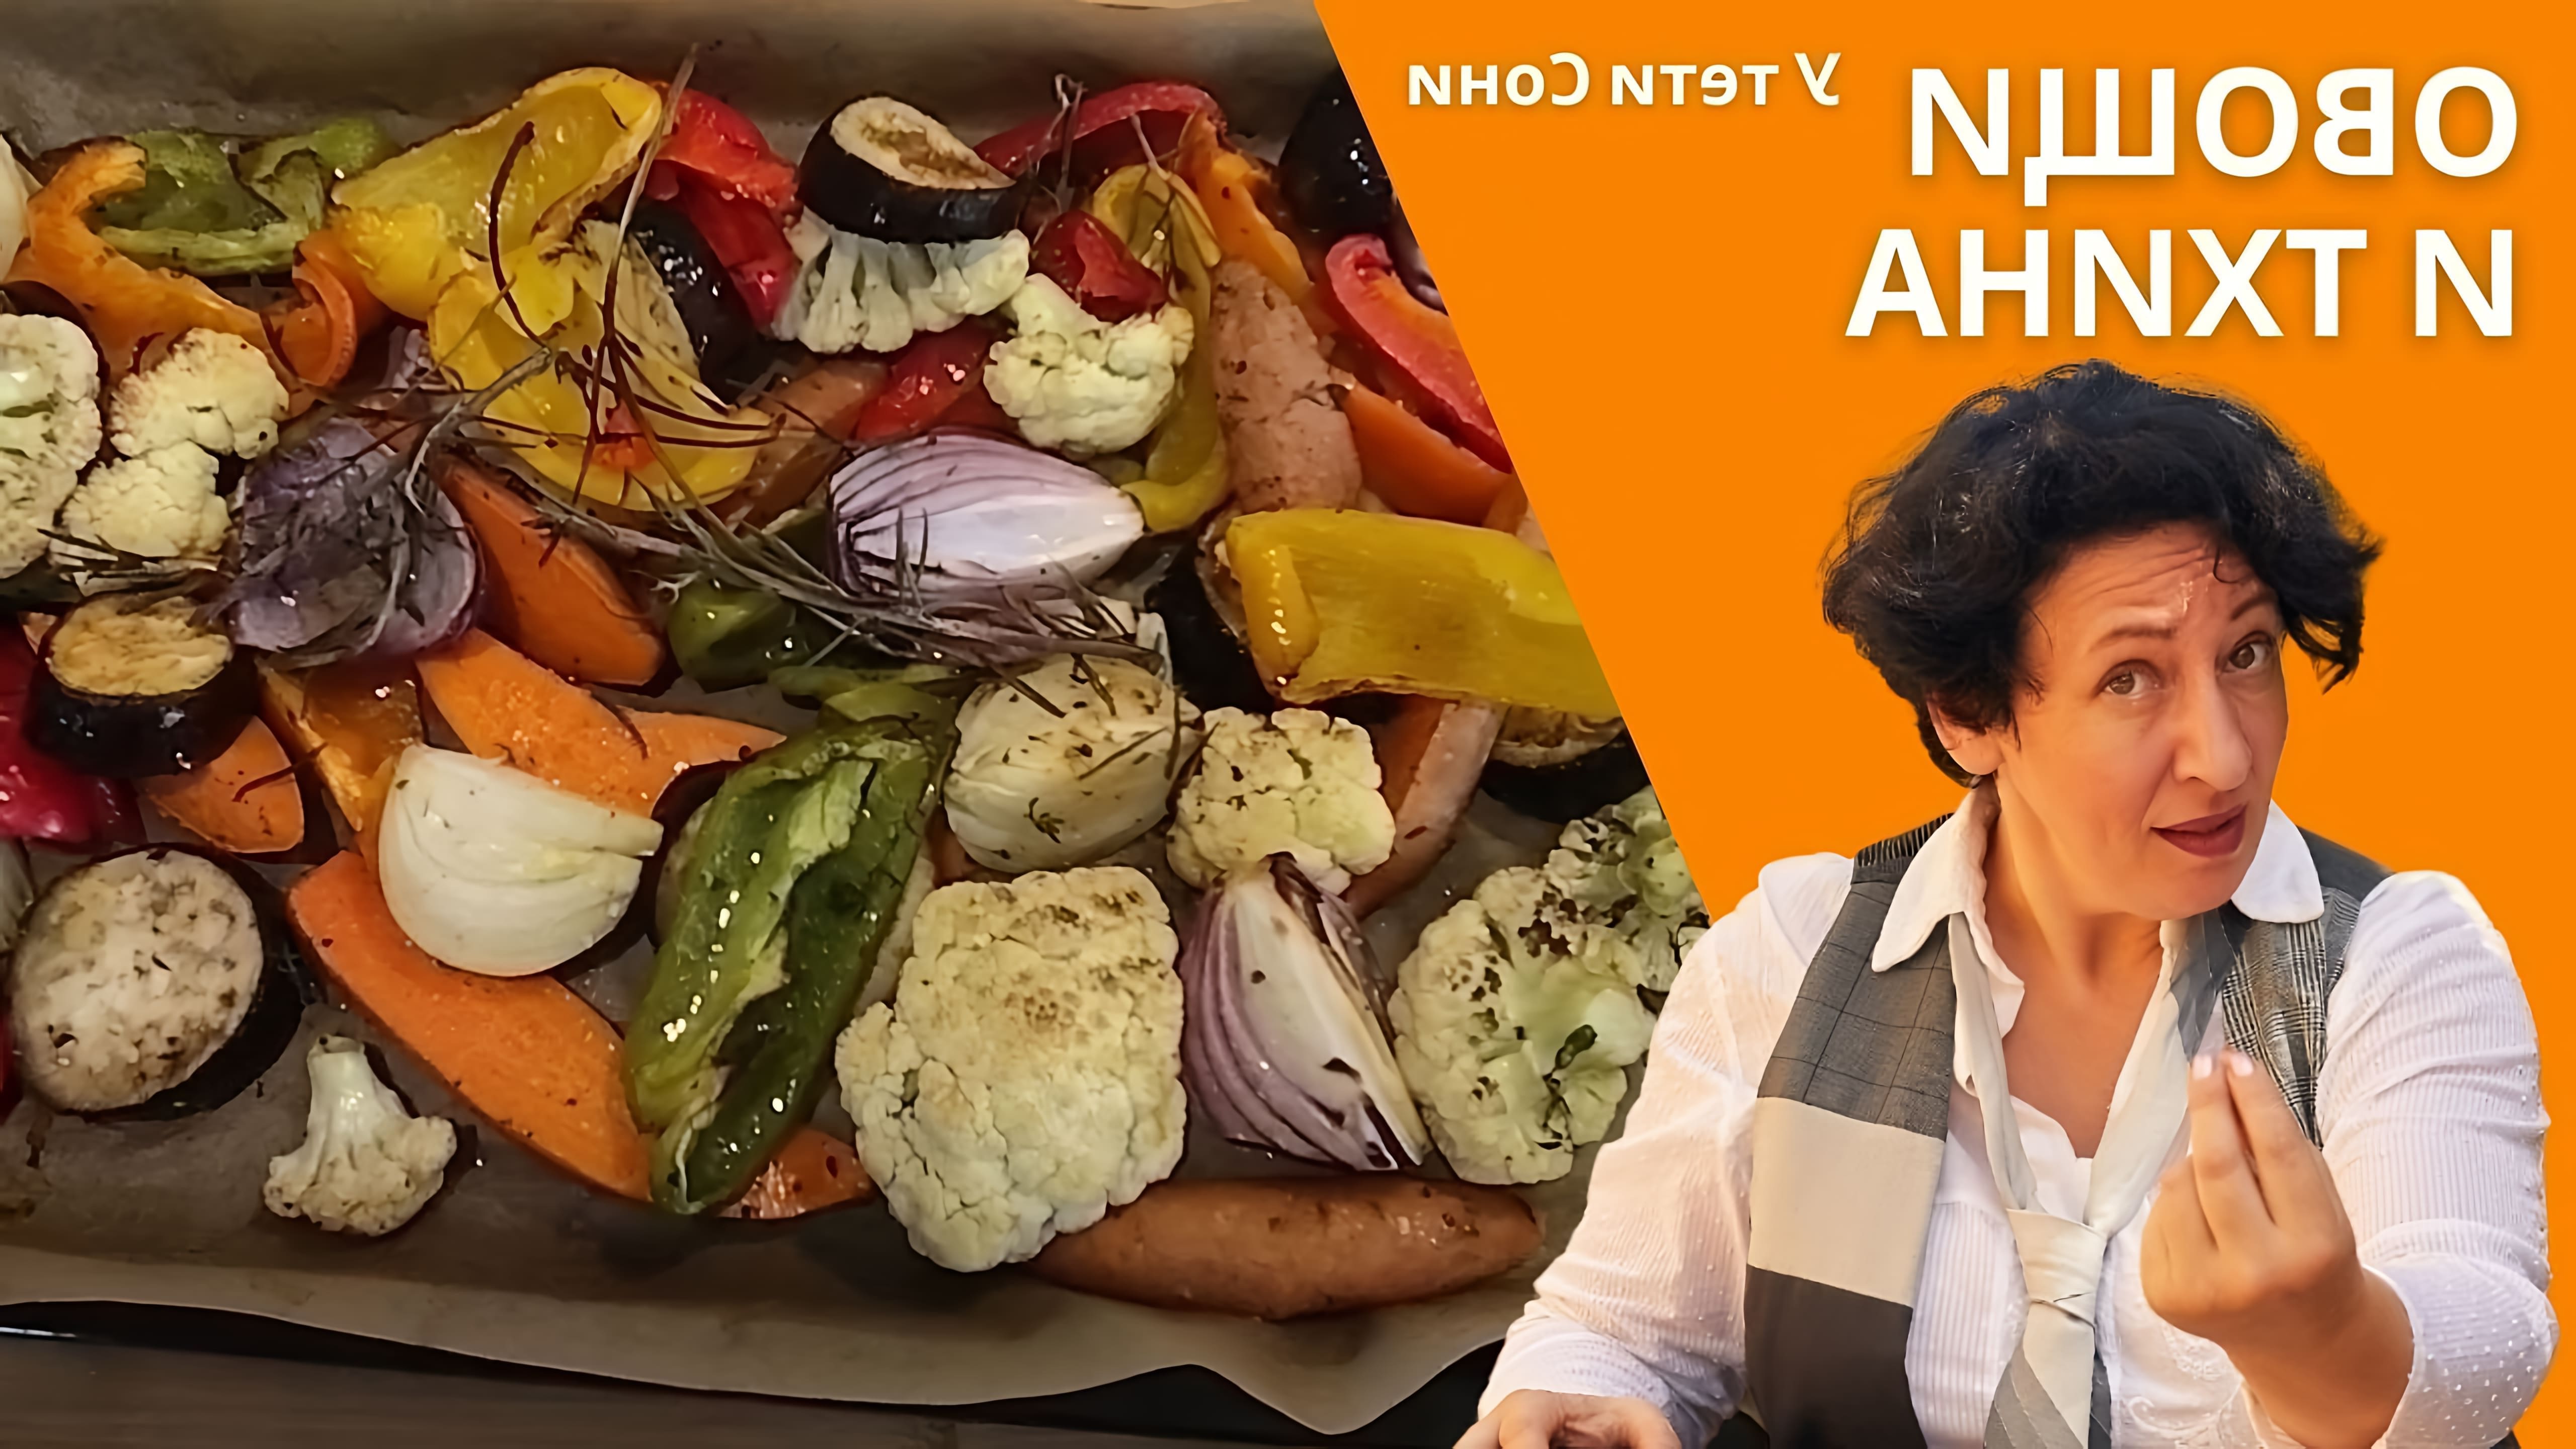 В этом видео демонстрируется процесс приготовления антипасти - традиционной закуски из запеченных овощей в Израиле